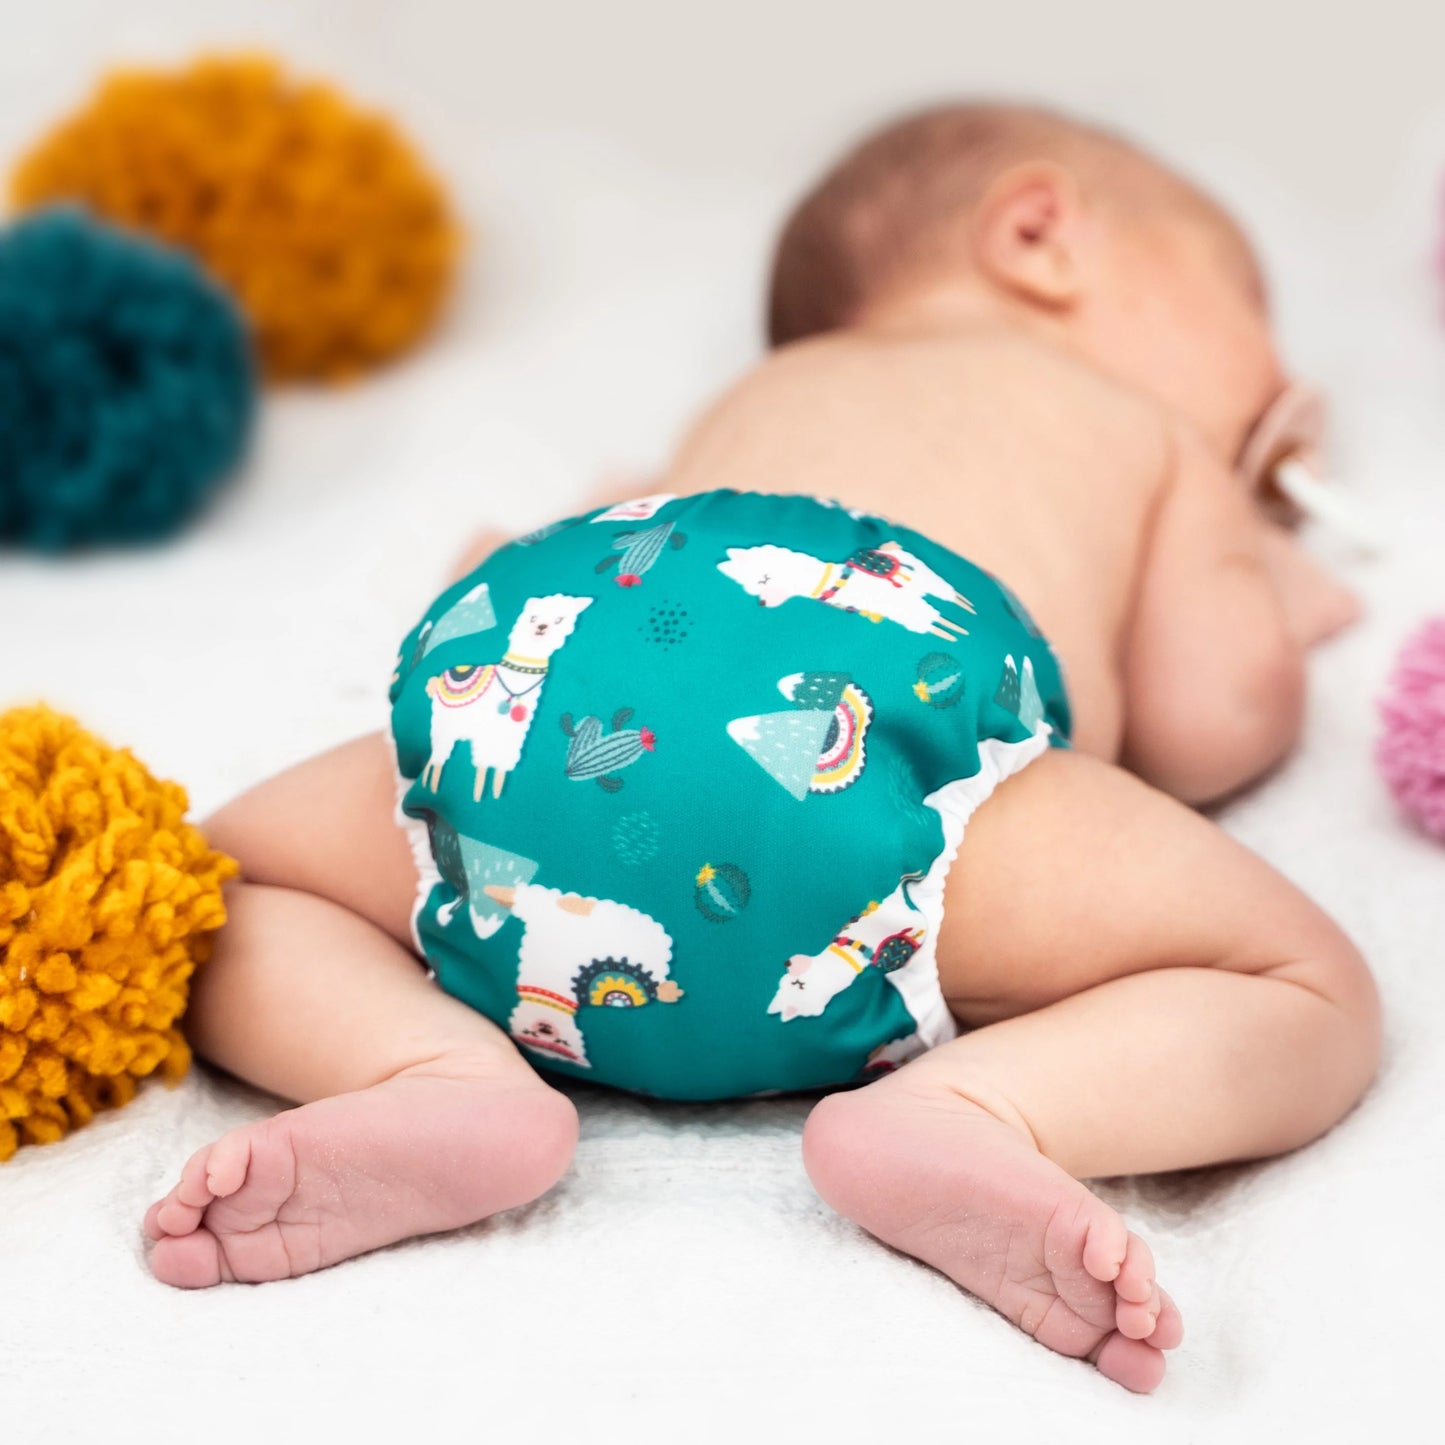 Günstiges Stoffwindel Set für Neugeborene ✓tagsüber ✓abhalten (Doodush Newborn-Überhose 2.0 + Tücher) - Spare 15€